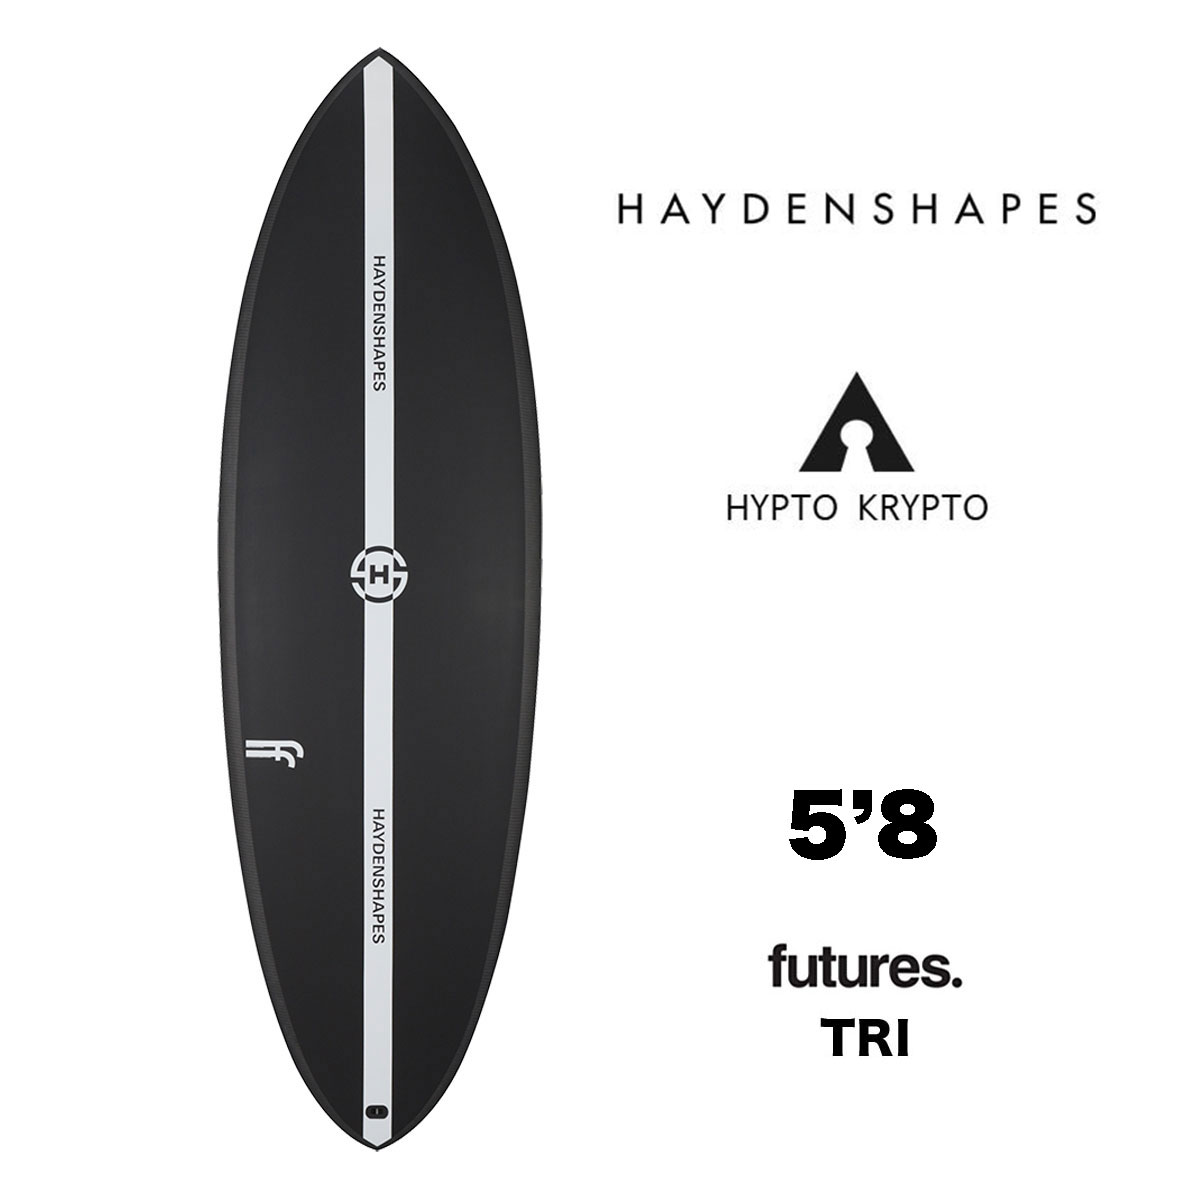 HAYDENSHAPES HYPTO KRYPTO 5.8 ヘイデン シェイプス ヒプトクリプト 5'8 futures TRI ショートボード  サーフボード サーフィン ブラック【HS0004-2】-ジャックオーシャンスポーツ